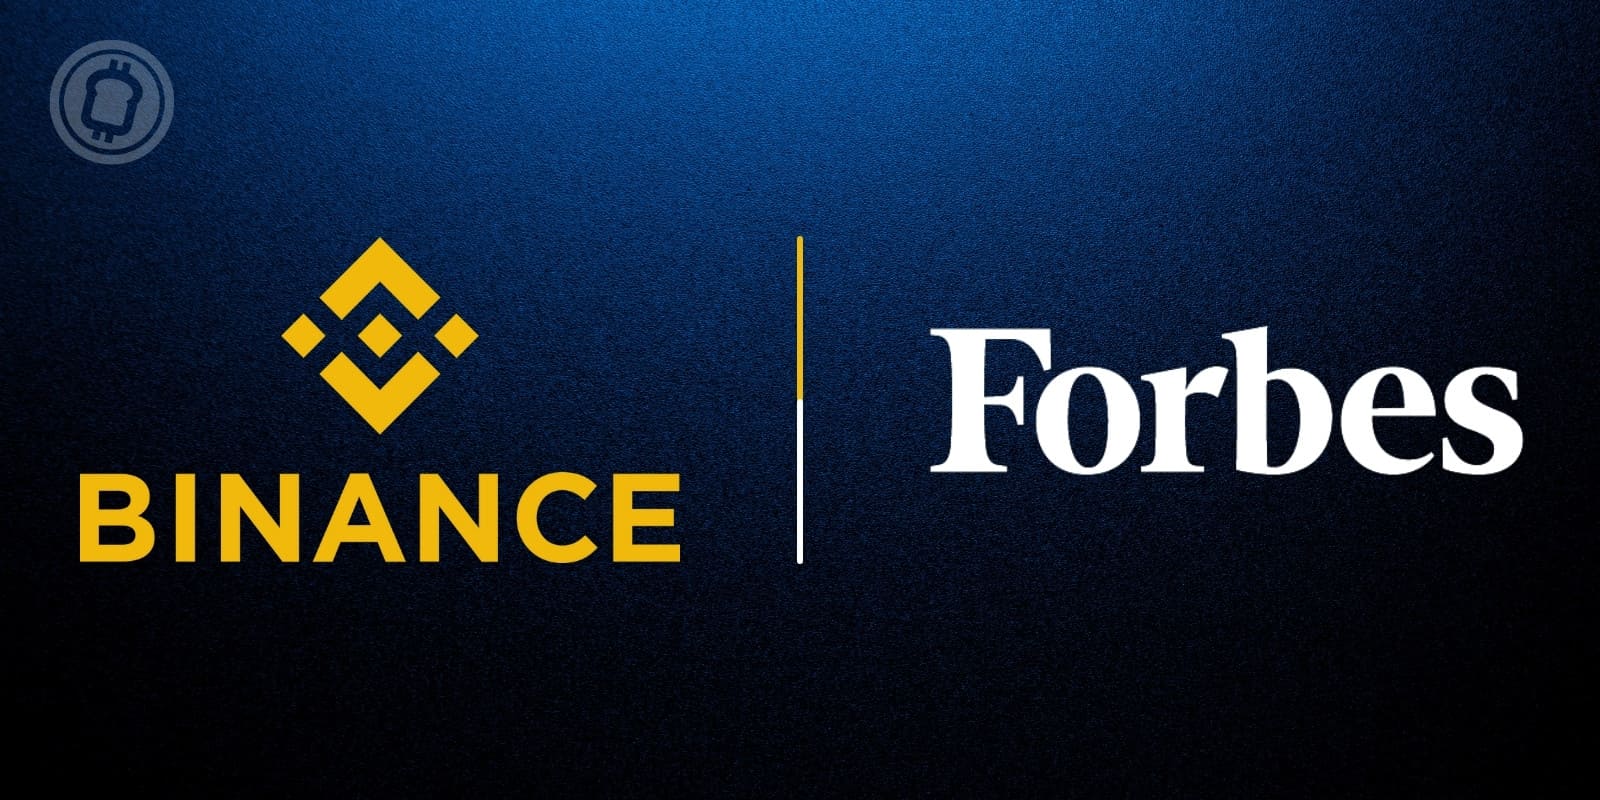 Binance investit 200 millions de dollars dans le célèbre magazine économique Forbes